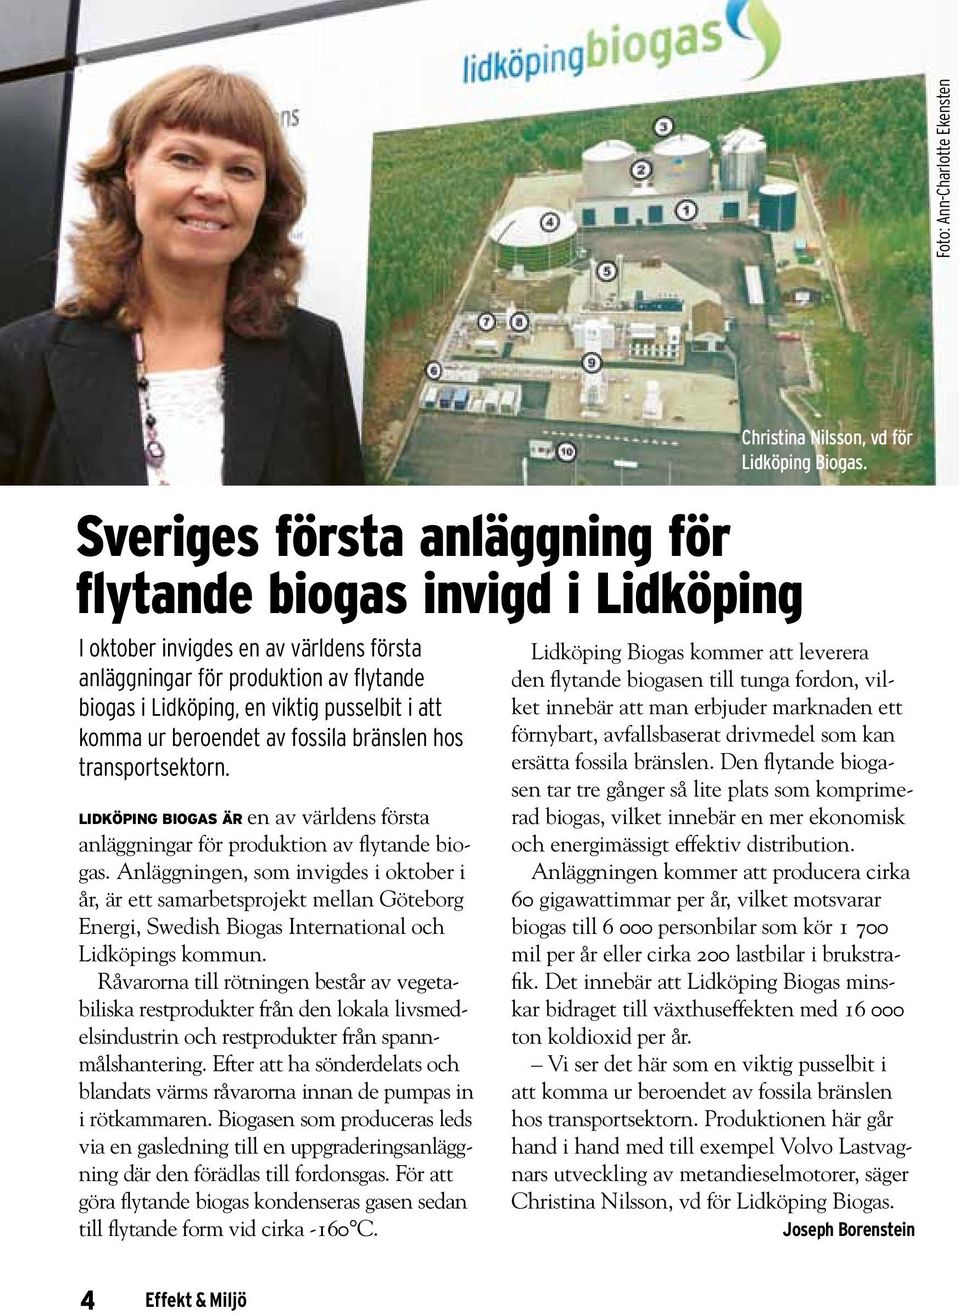 Anläggningen, som invigdes i oktober i år, är ett samarbetsprojekt mellan Göteborg Energi, Swedish Biogas International och Lidköpings kommun.